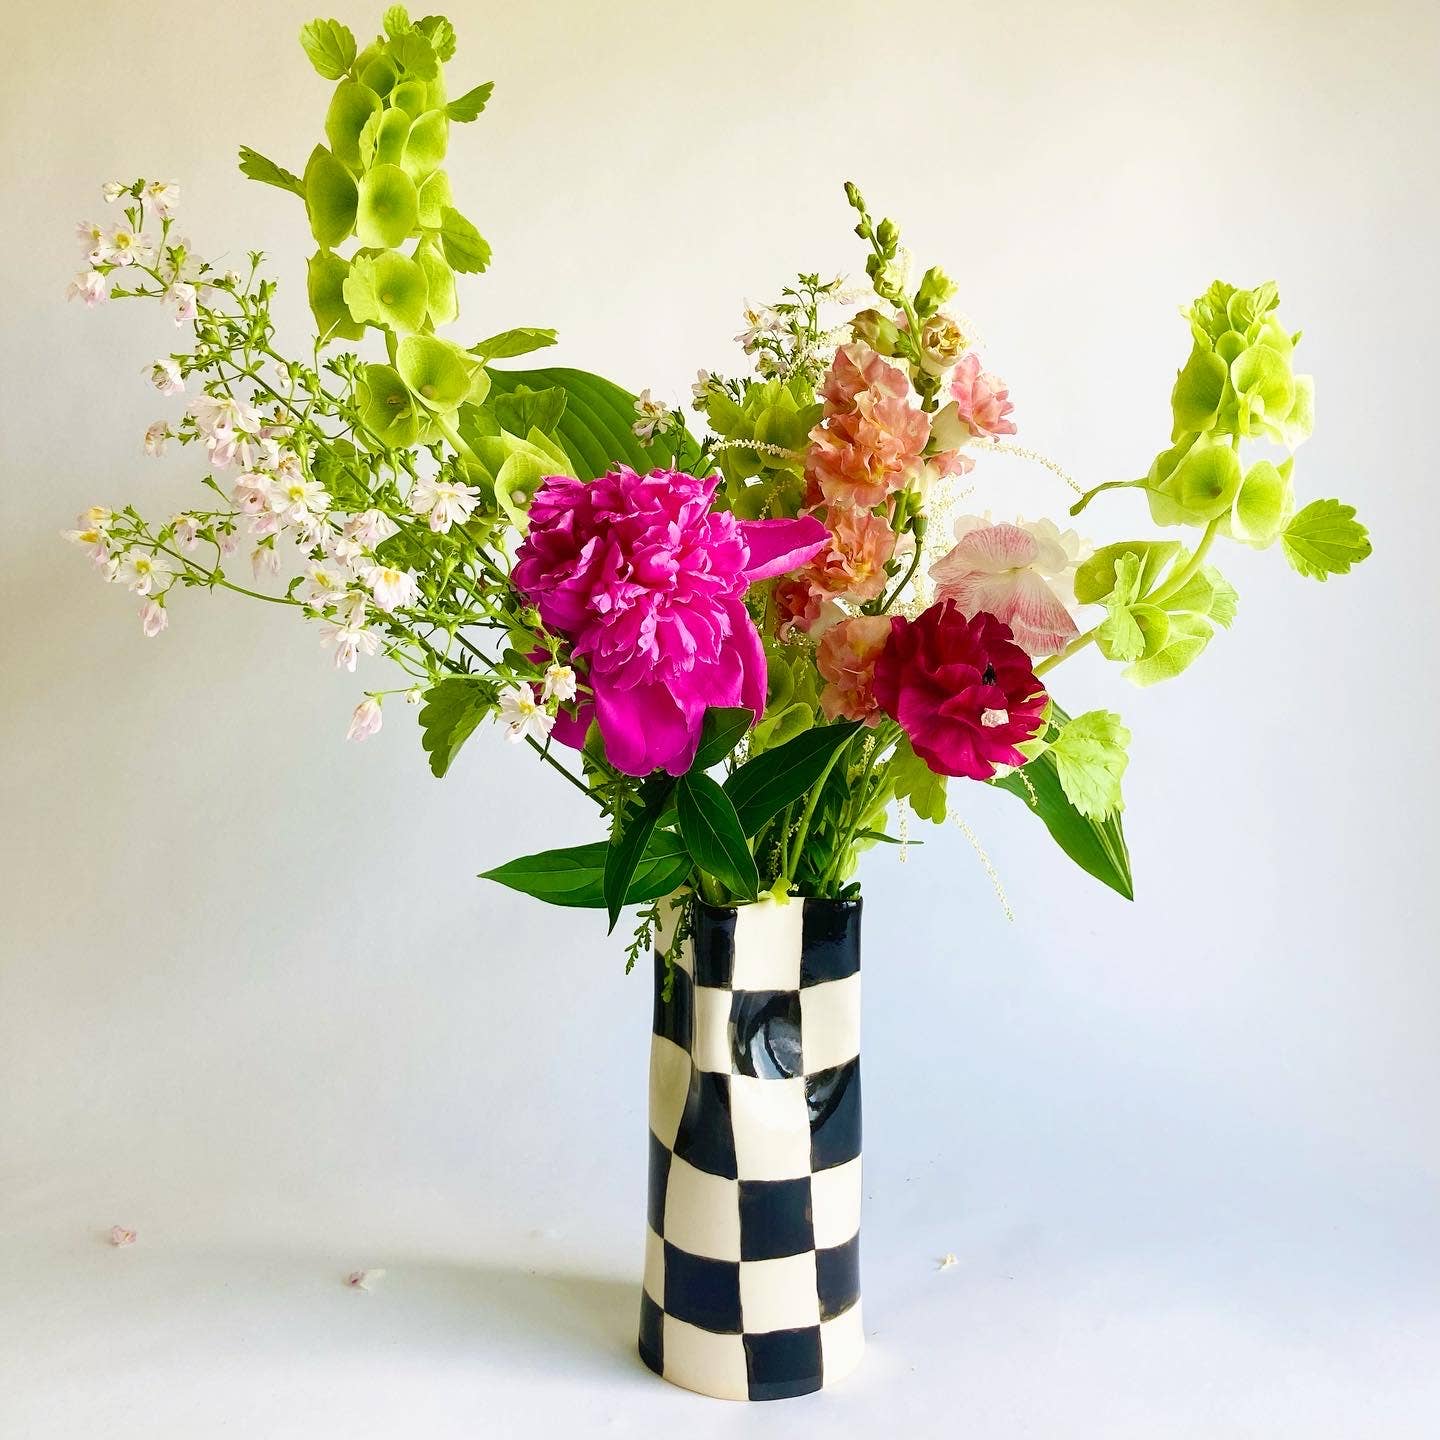 Ceramic Vase with checkers: Medium / black